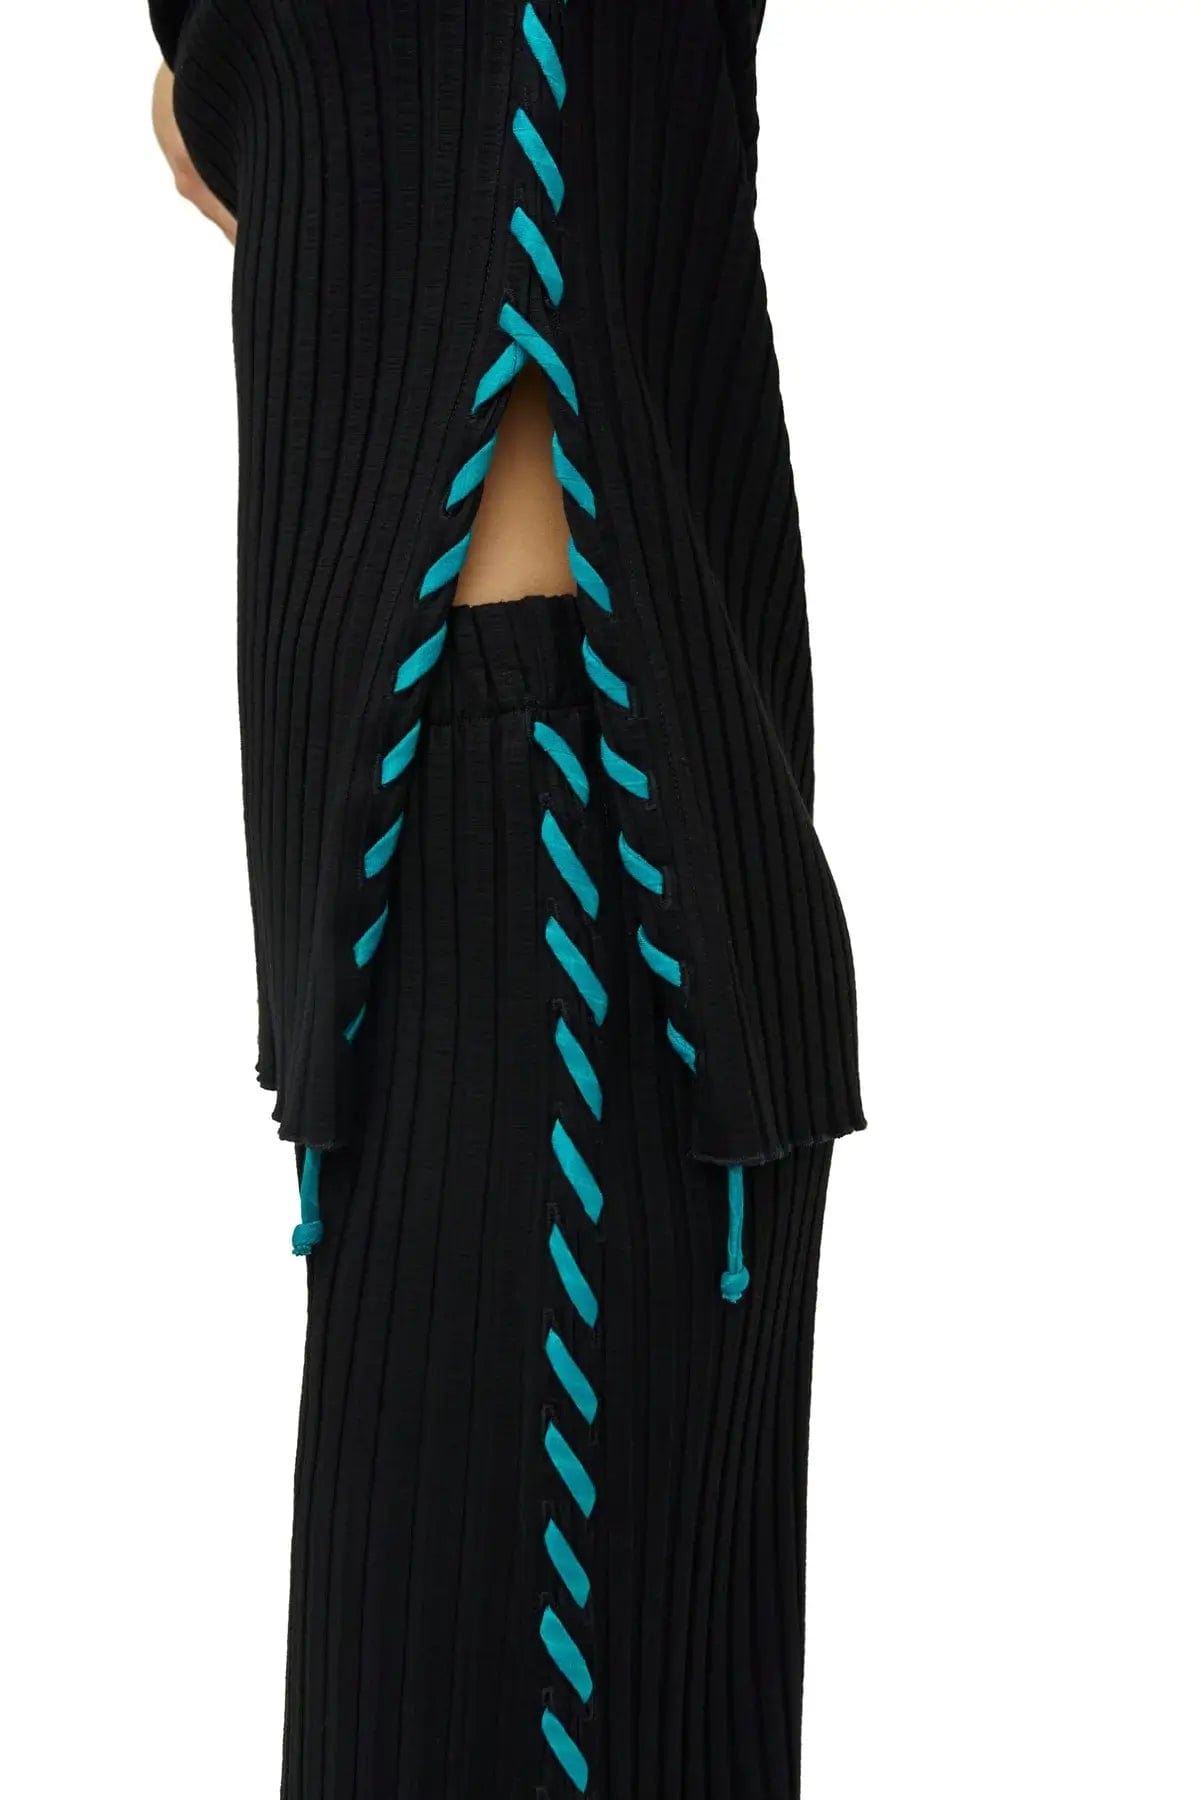 SIMONMILLER dress Simon Miller  - Aukai Tunic with whip stitch in black